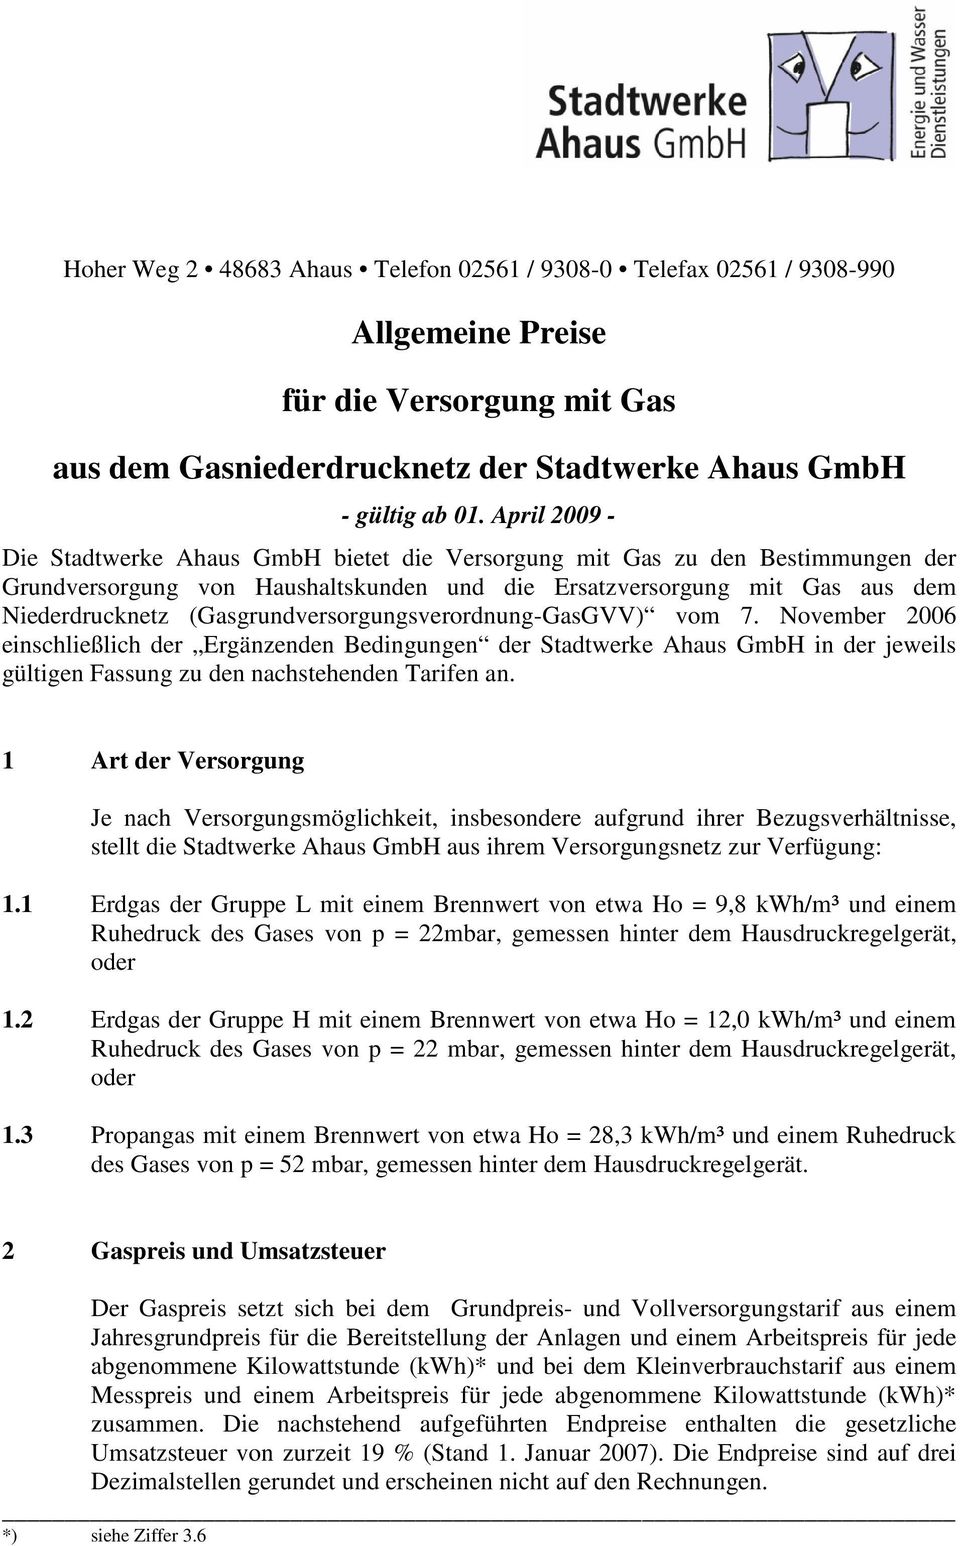 November 2006 einschließlich der Ergänzenden Bedingungen der Stadtwerke Ahaus GmbH in der jeweils gültigen Fassung zu den nachstehenden Tarifen an.